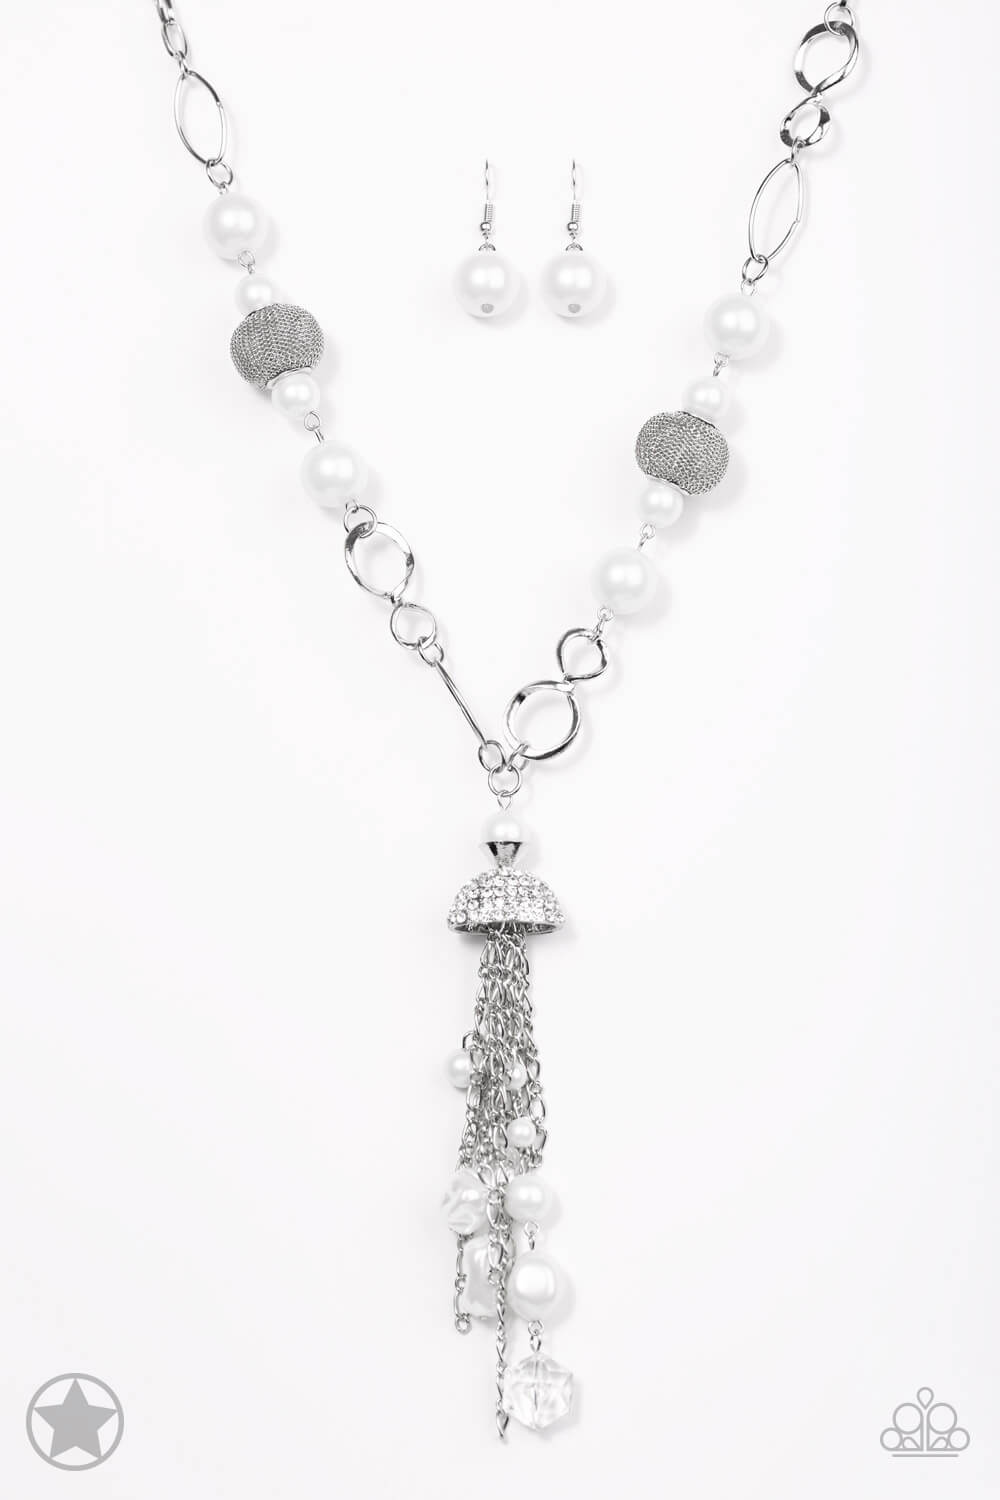 Designated Diva - White Necklace Set - Princess Glam Shop